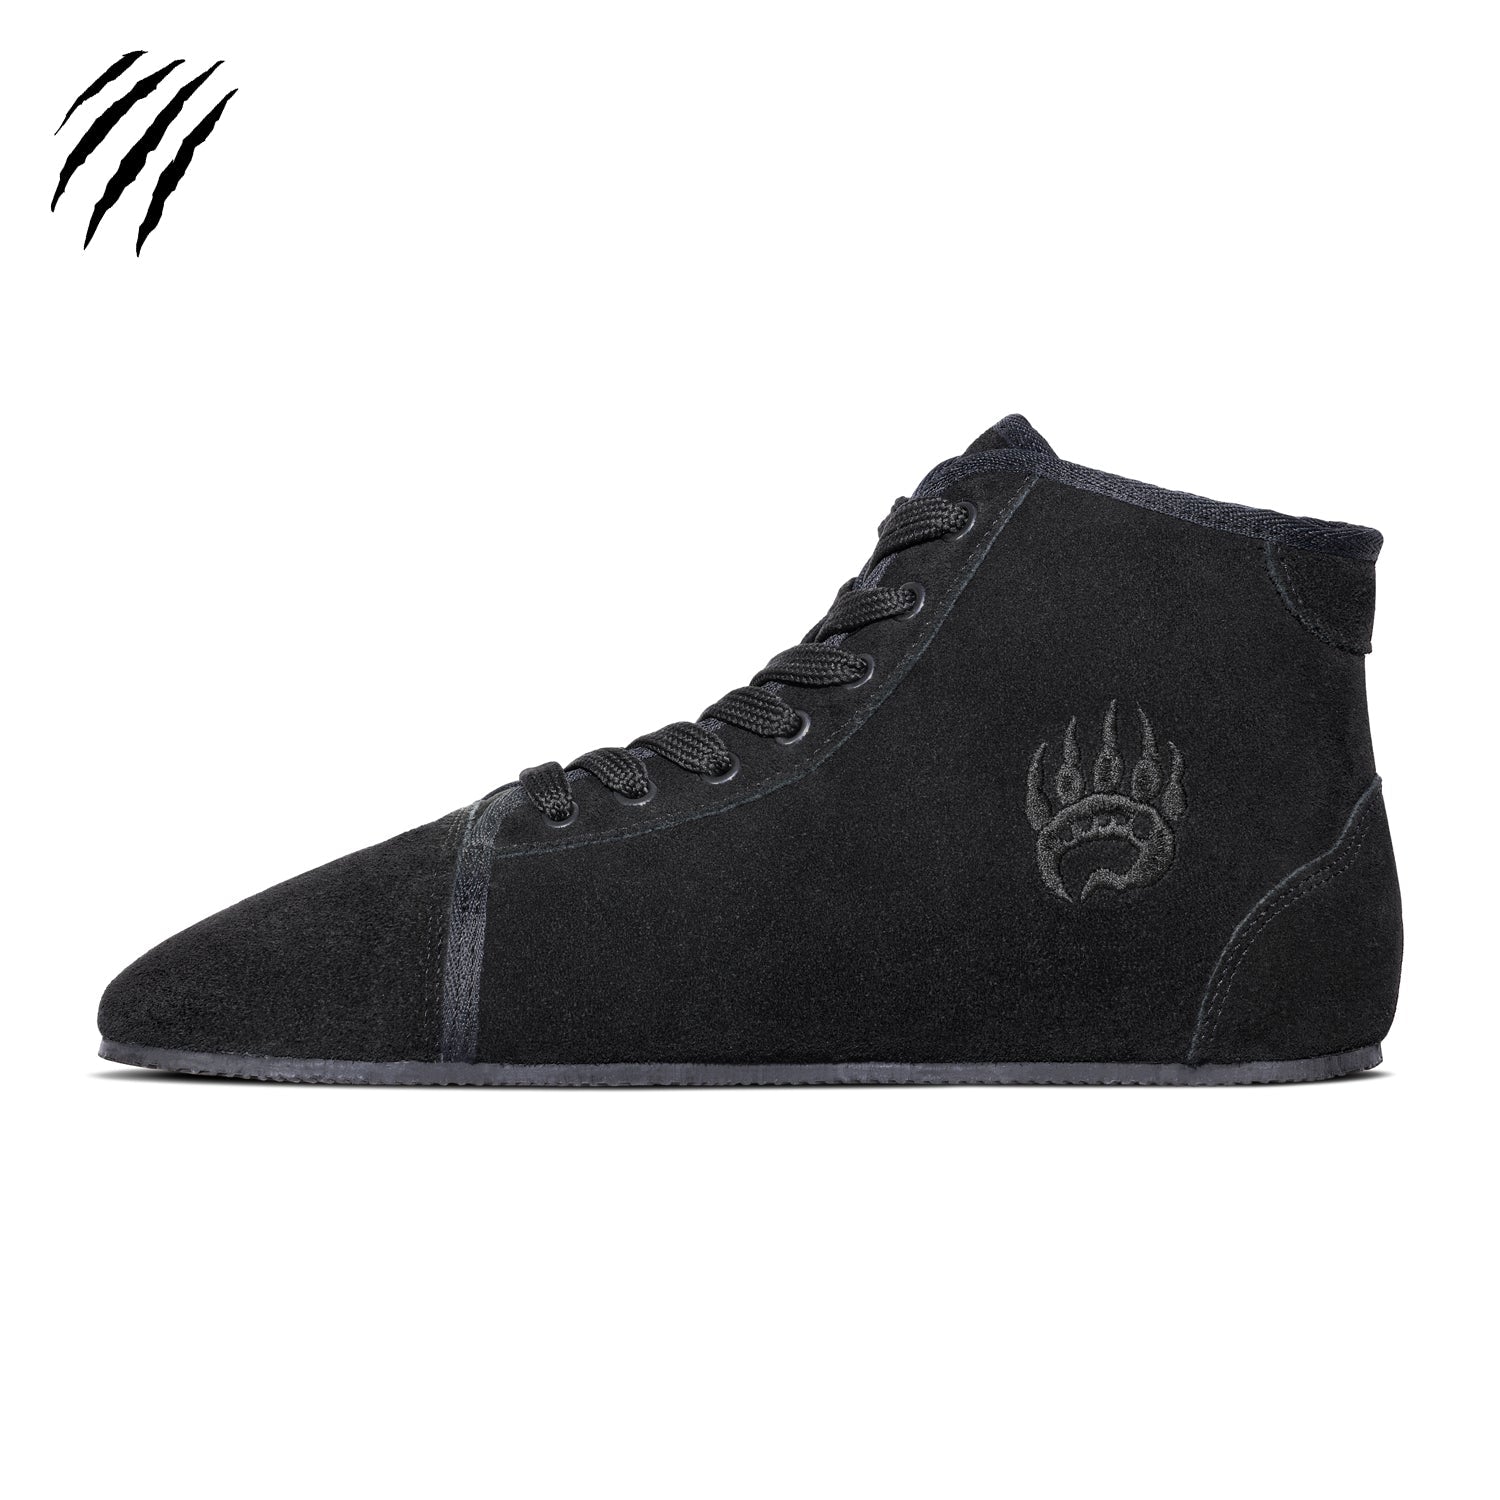 Bearfoot - Ursus S - HT / Black (Blemished) - Sneaker